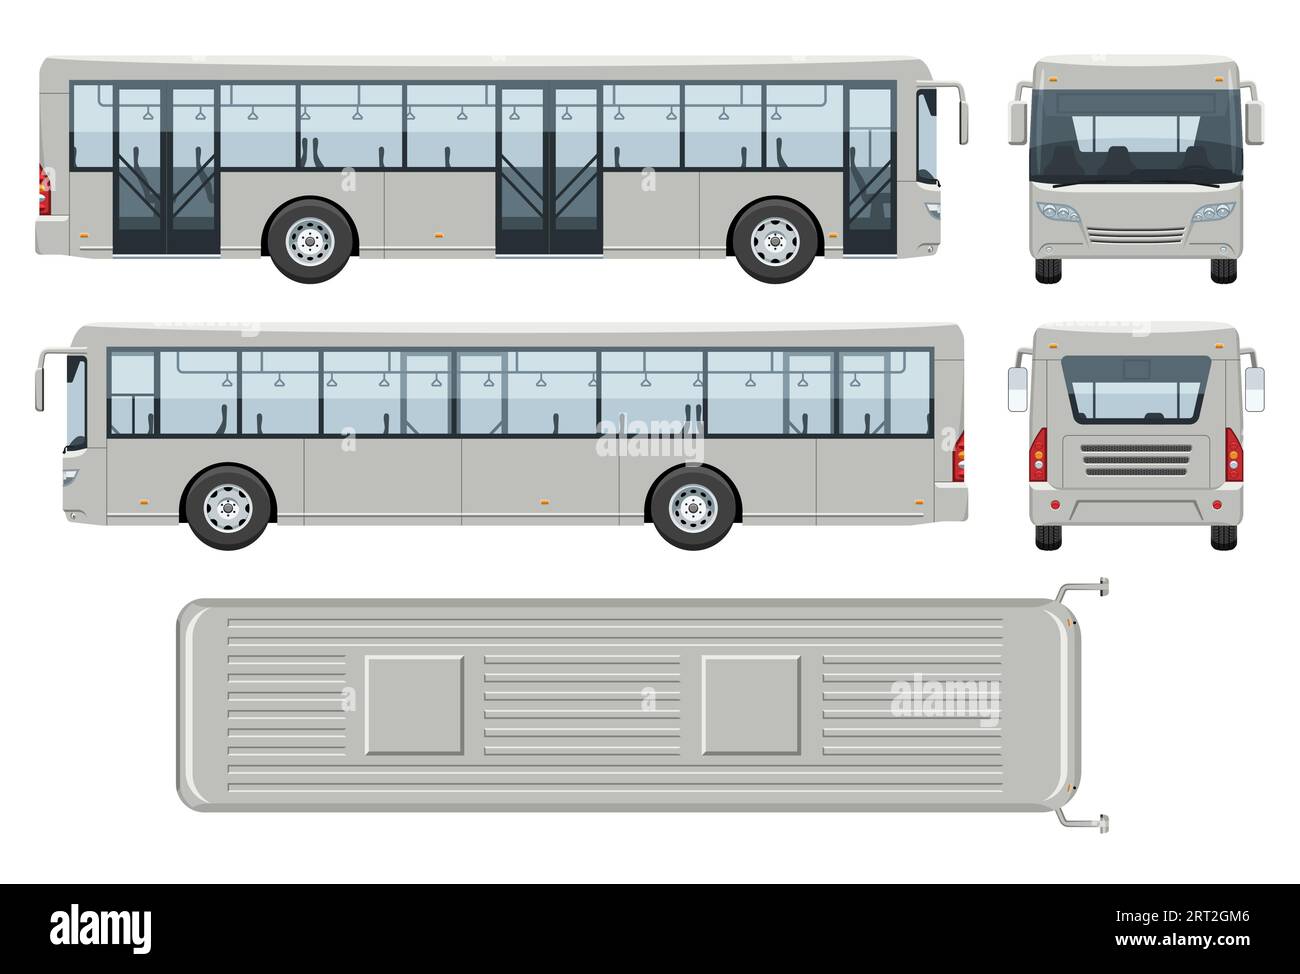 Modèle vectoriel de bus navette avec des couleurs simples sans dégradés et effets. Vue de côté, de face, de dos et de dessus Illustration de Vecteur